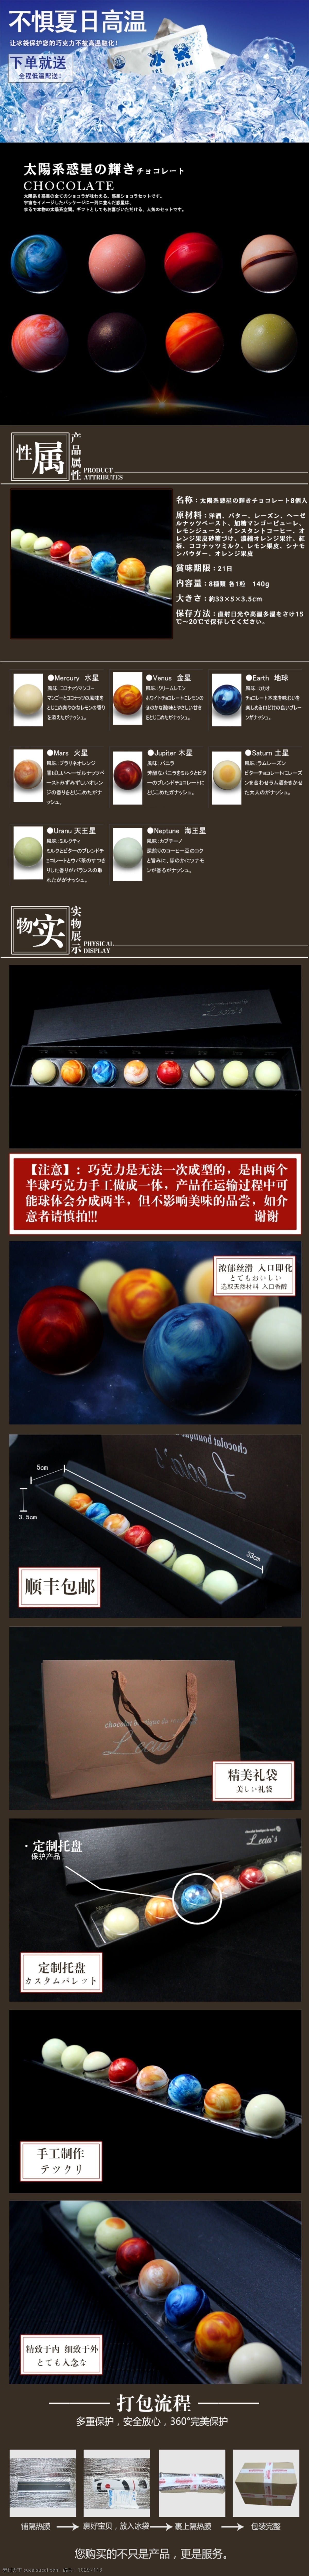 星球 巧克力 详情 页 日本 原创设计 原创淘宝设计